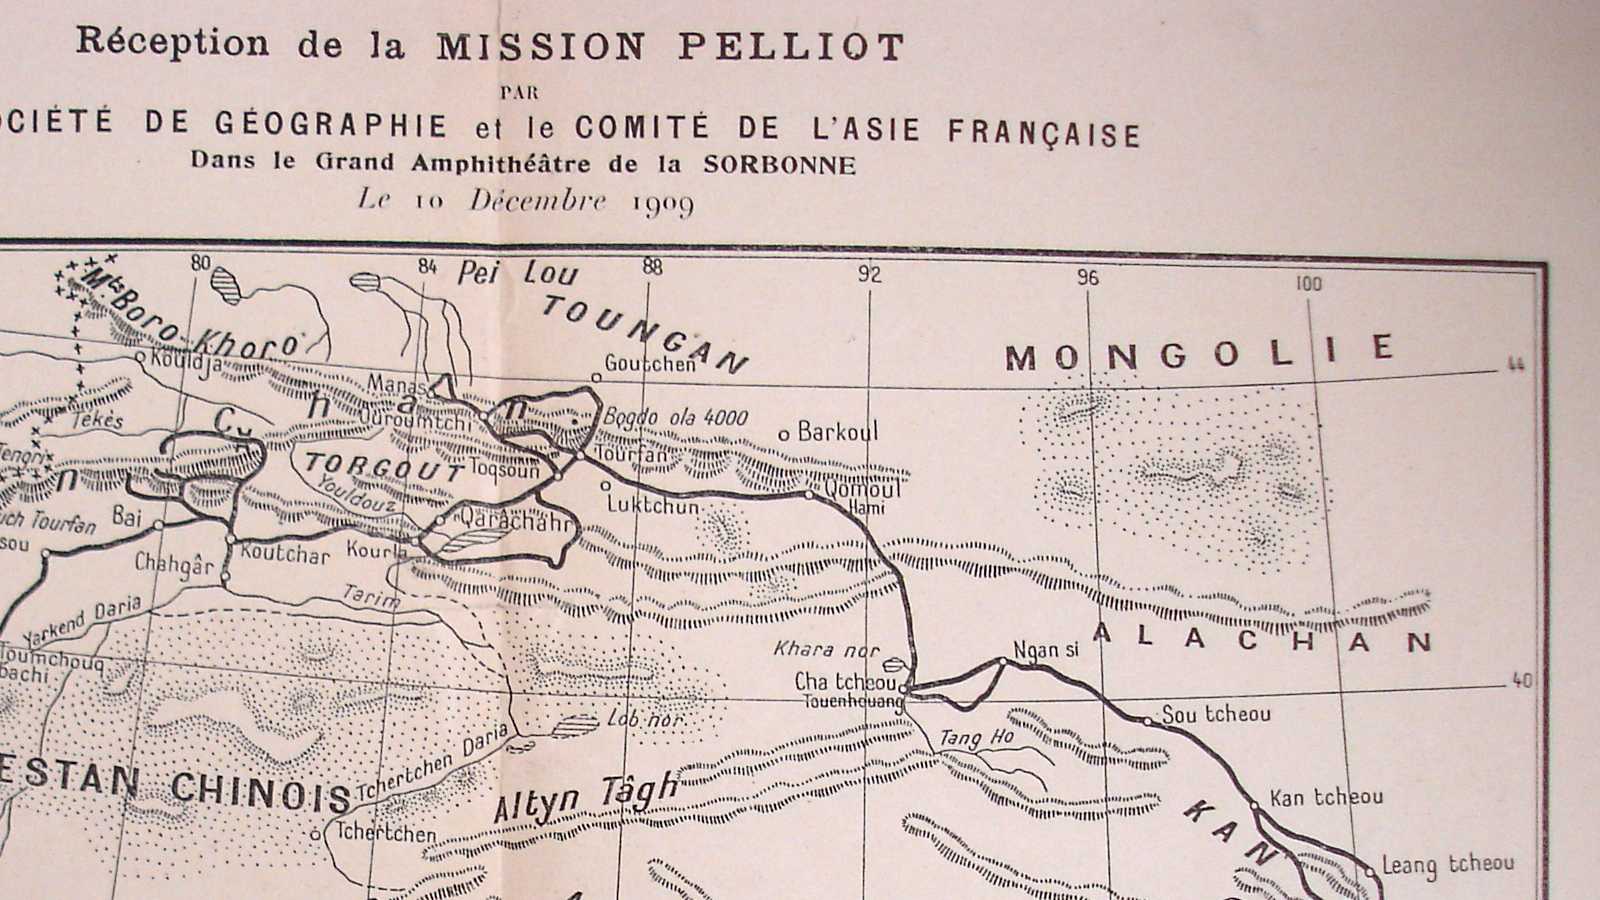 Extrait de la carte de la mission Pelliot (c) Saint-Mandé